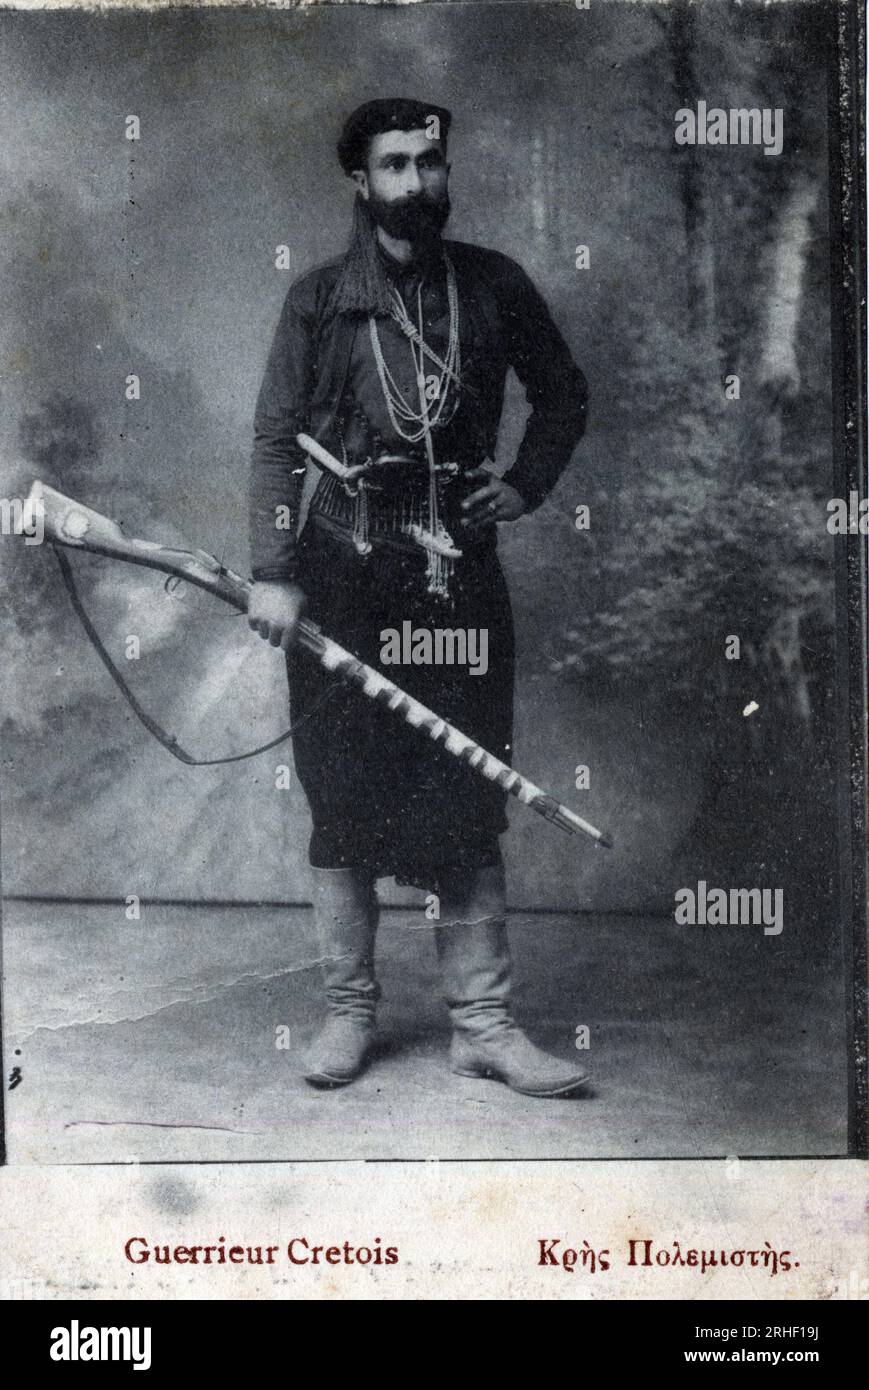 Premiere guerre mondiale (1914-1918) - Campagne d'Orient : portrait d'un guerrier cretois - Carte postale Stock Photo